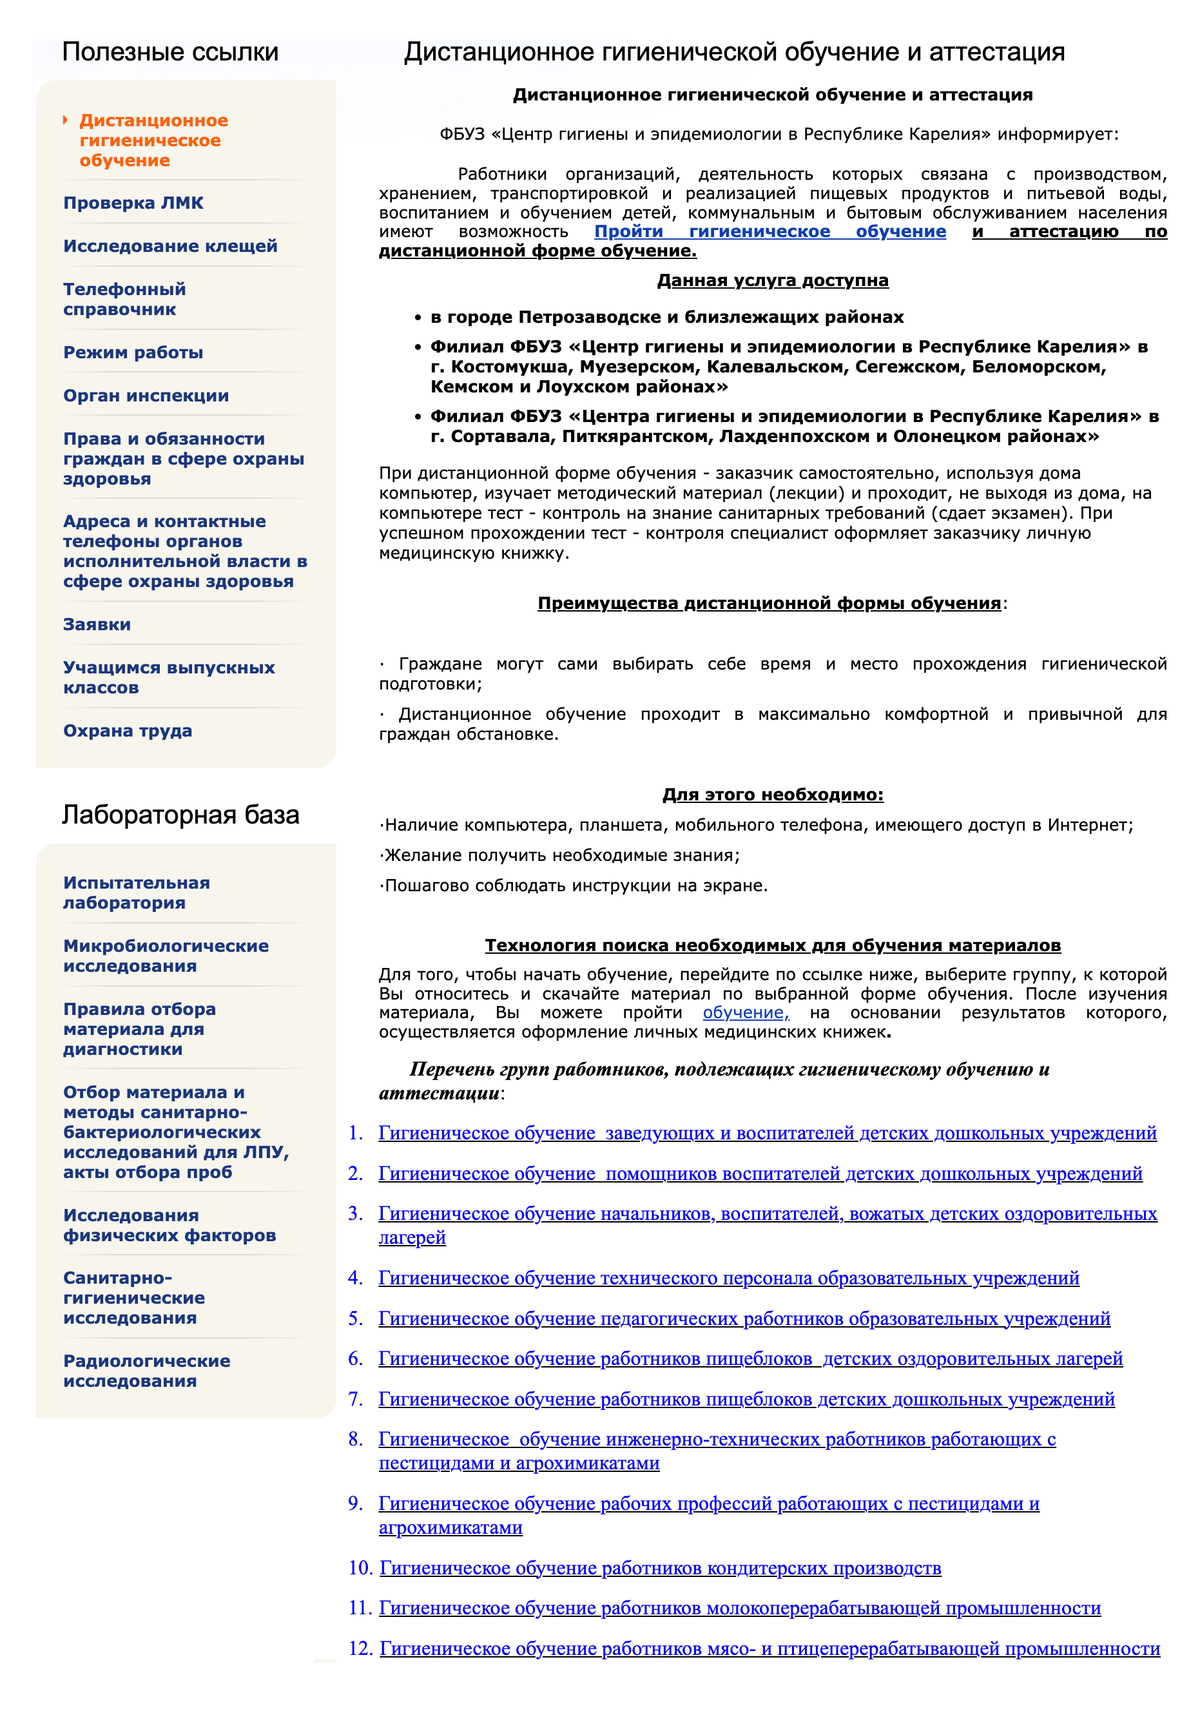 Материалы для изучения на сайте центра Республики Карелия